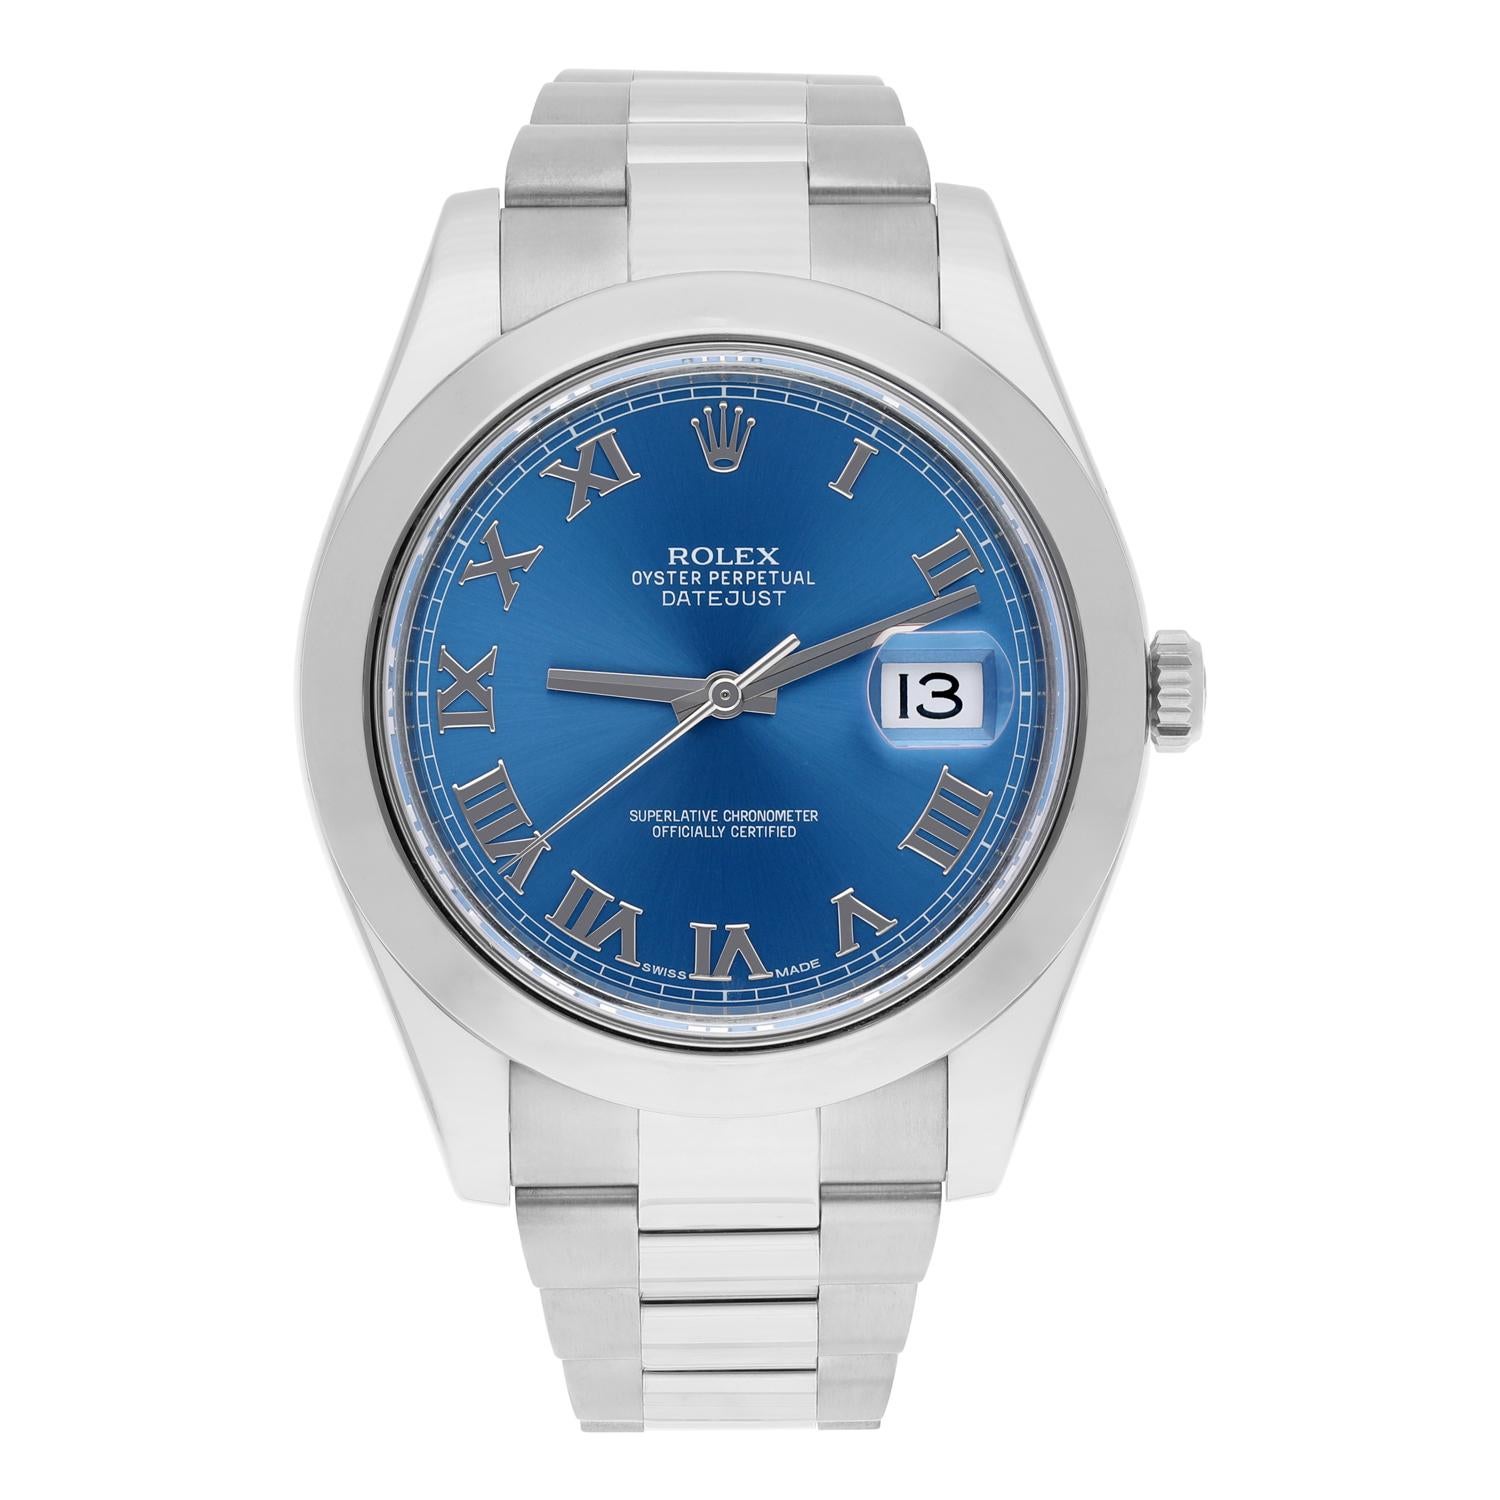 Rolex Datejust II Steel Blue Roman Dial Oyster Bracelet Mens 41mm Watch 116300. La montre a été professionnellement polie, entretenue et ne présente aucune rayure ou imperfection visible. Menthe.
La vente est accompagnée d'une boîte Rolex, d'un